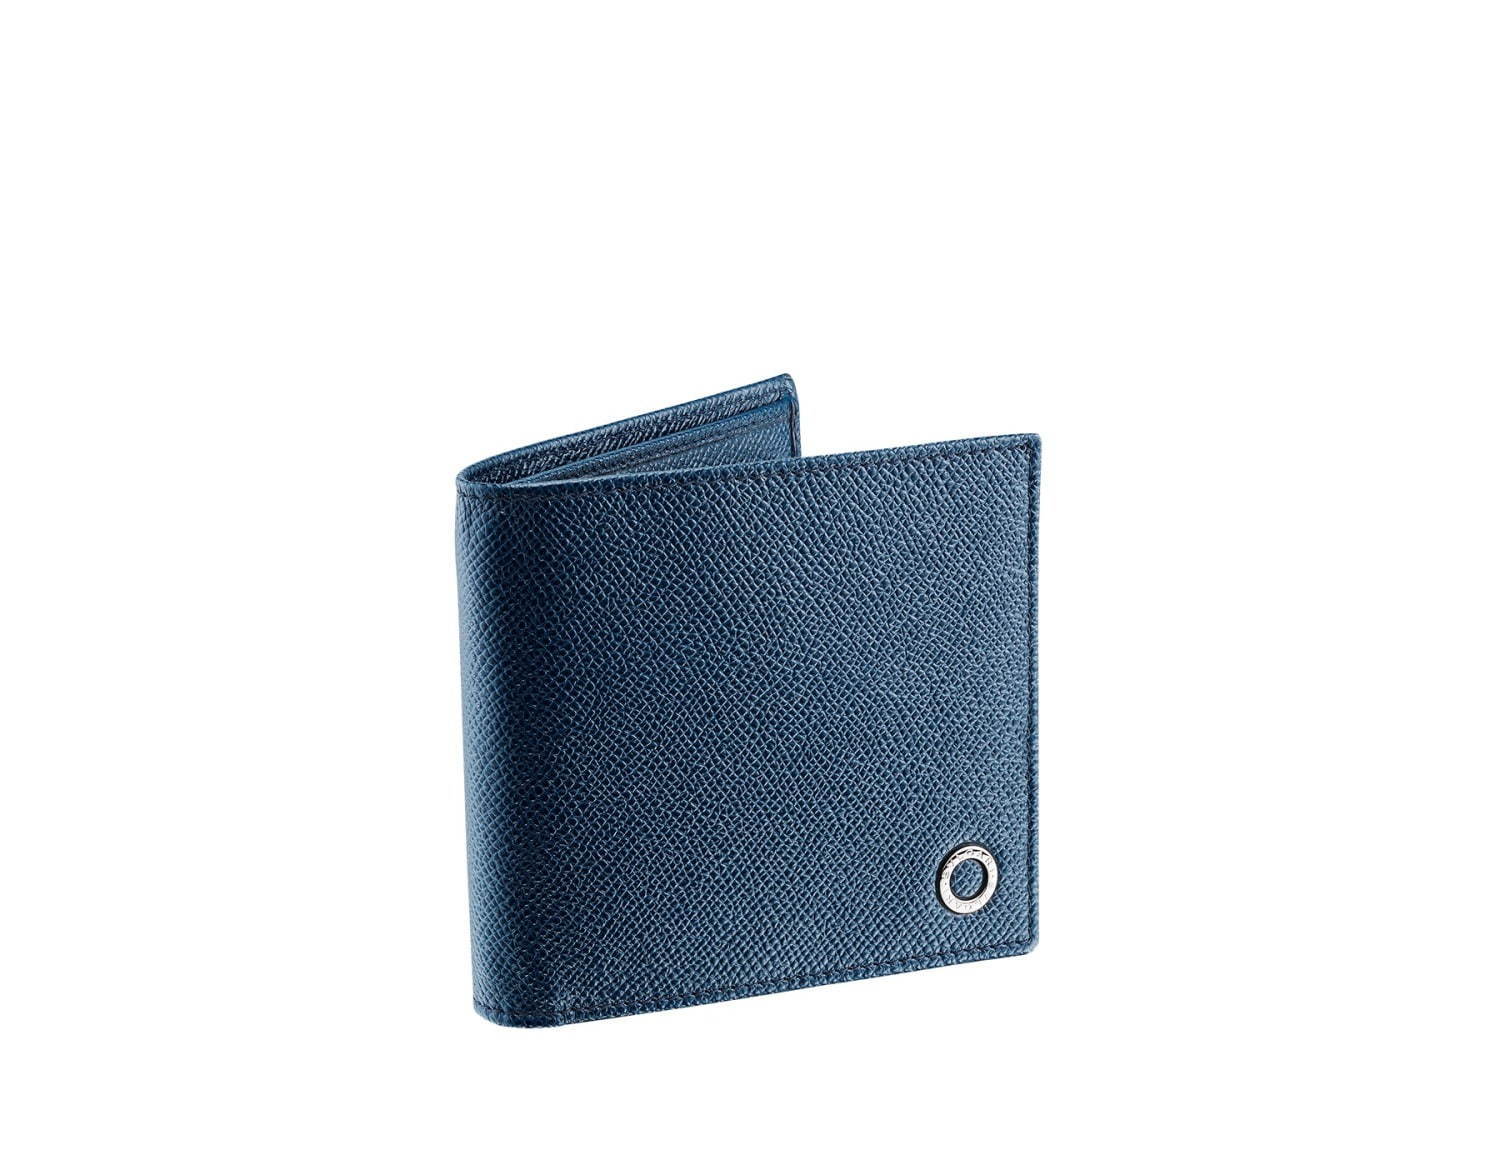 日本向け正規品 BVLGARI ブルガリ財布 二つ折りブルー 長財布 長財布